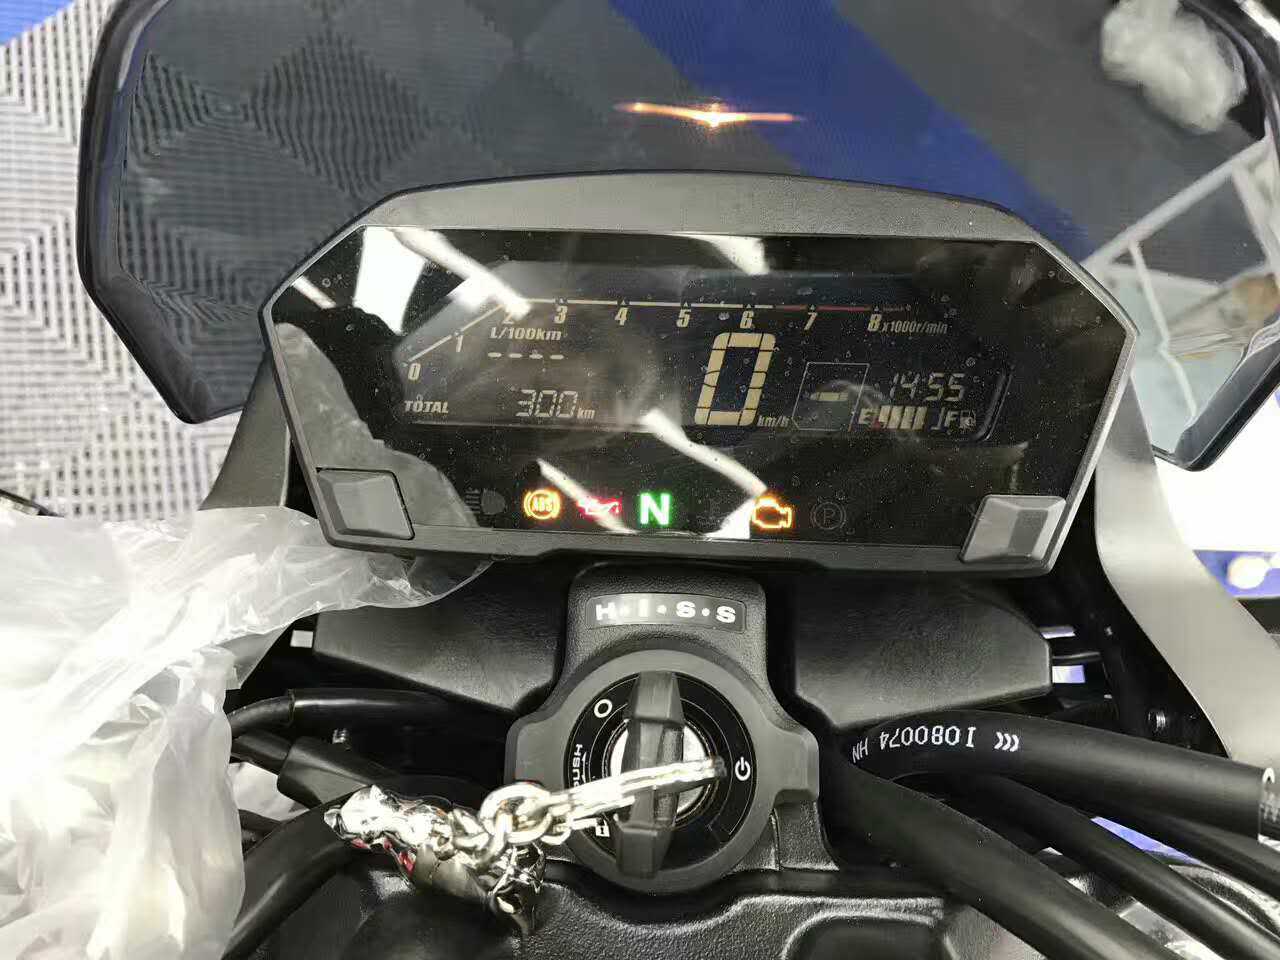 任性！本田摩托750S 贴了隐形车衣 各位老司机怎么看？